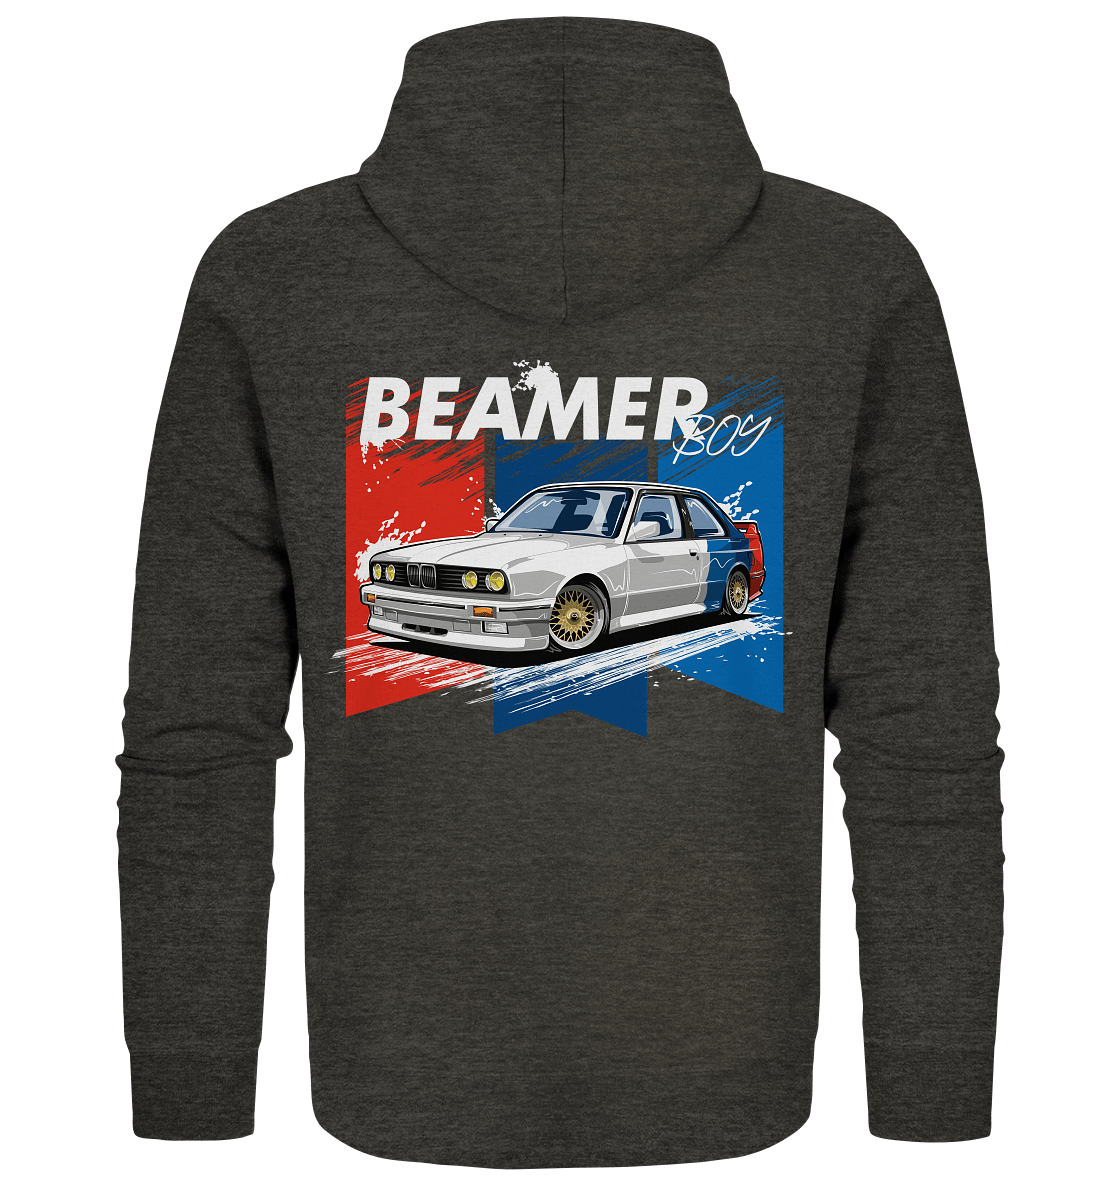 Beamer Boy E30 - Organic Zipper - MotoMerch.de